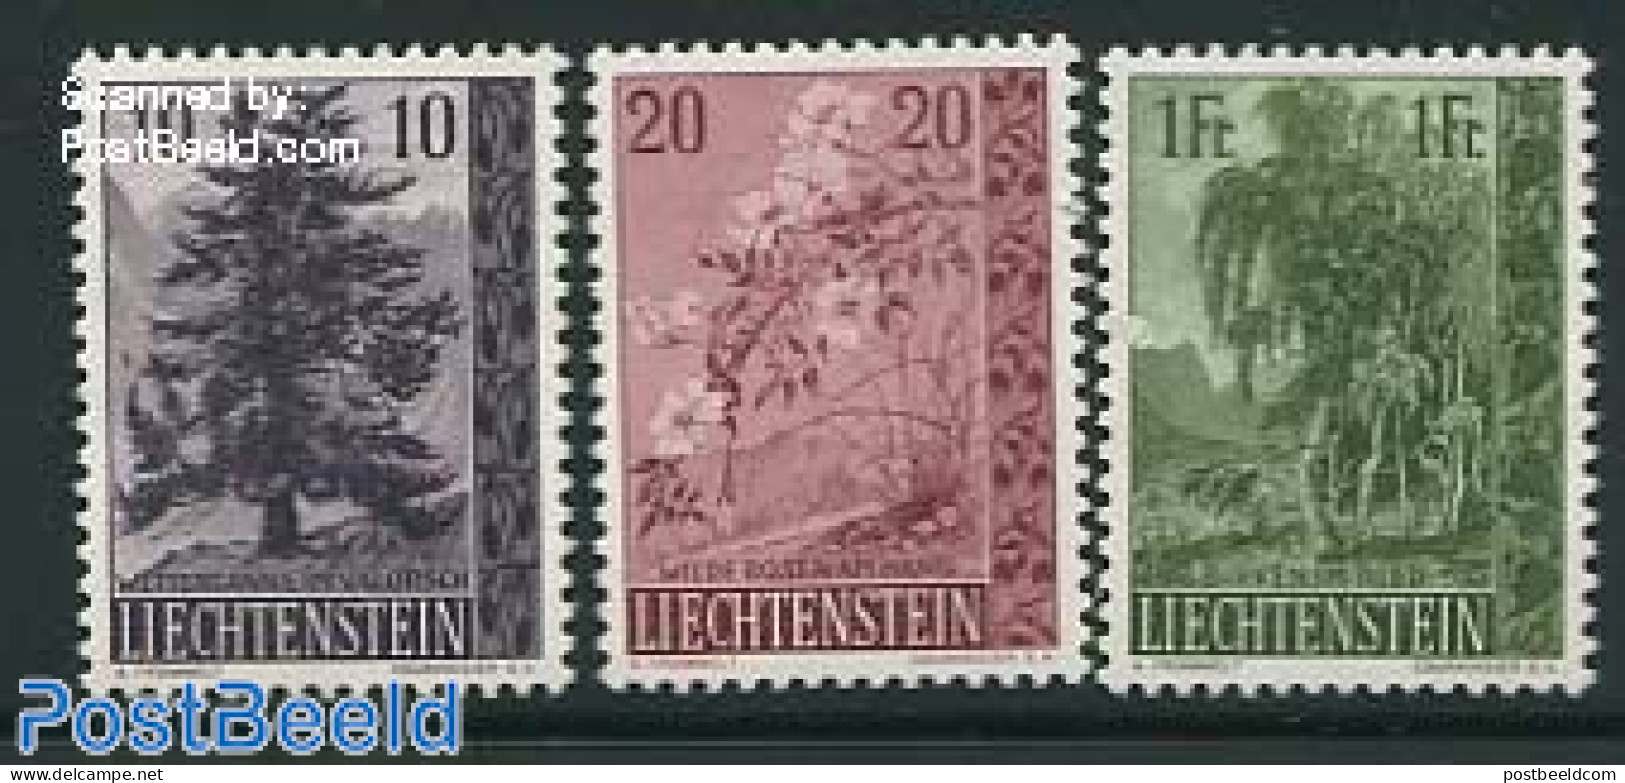 Liechtenstein 1957 Trees 3v, Unused (hinged), Nature - Trees & Forests - Ungebraucht